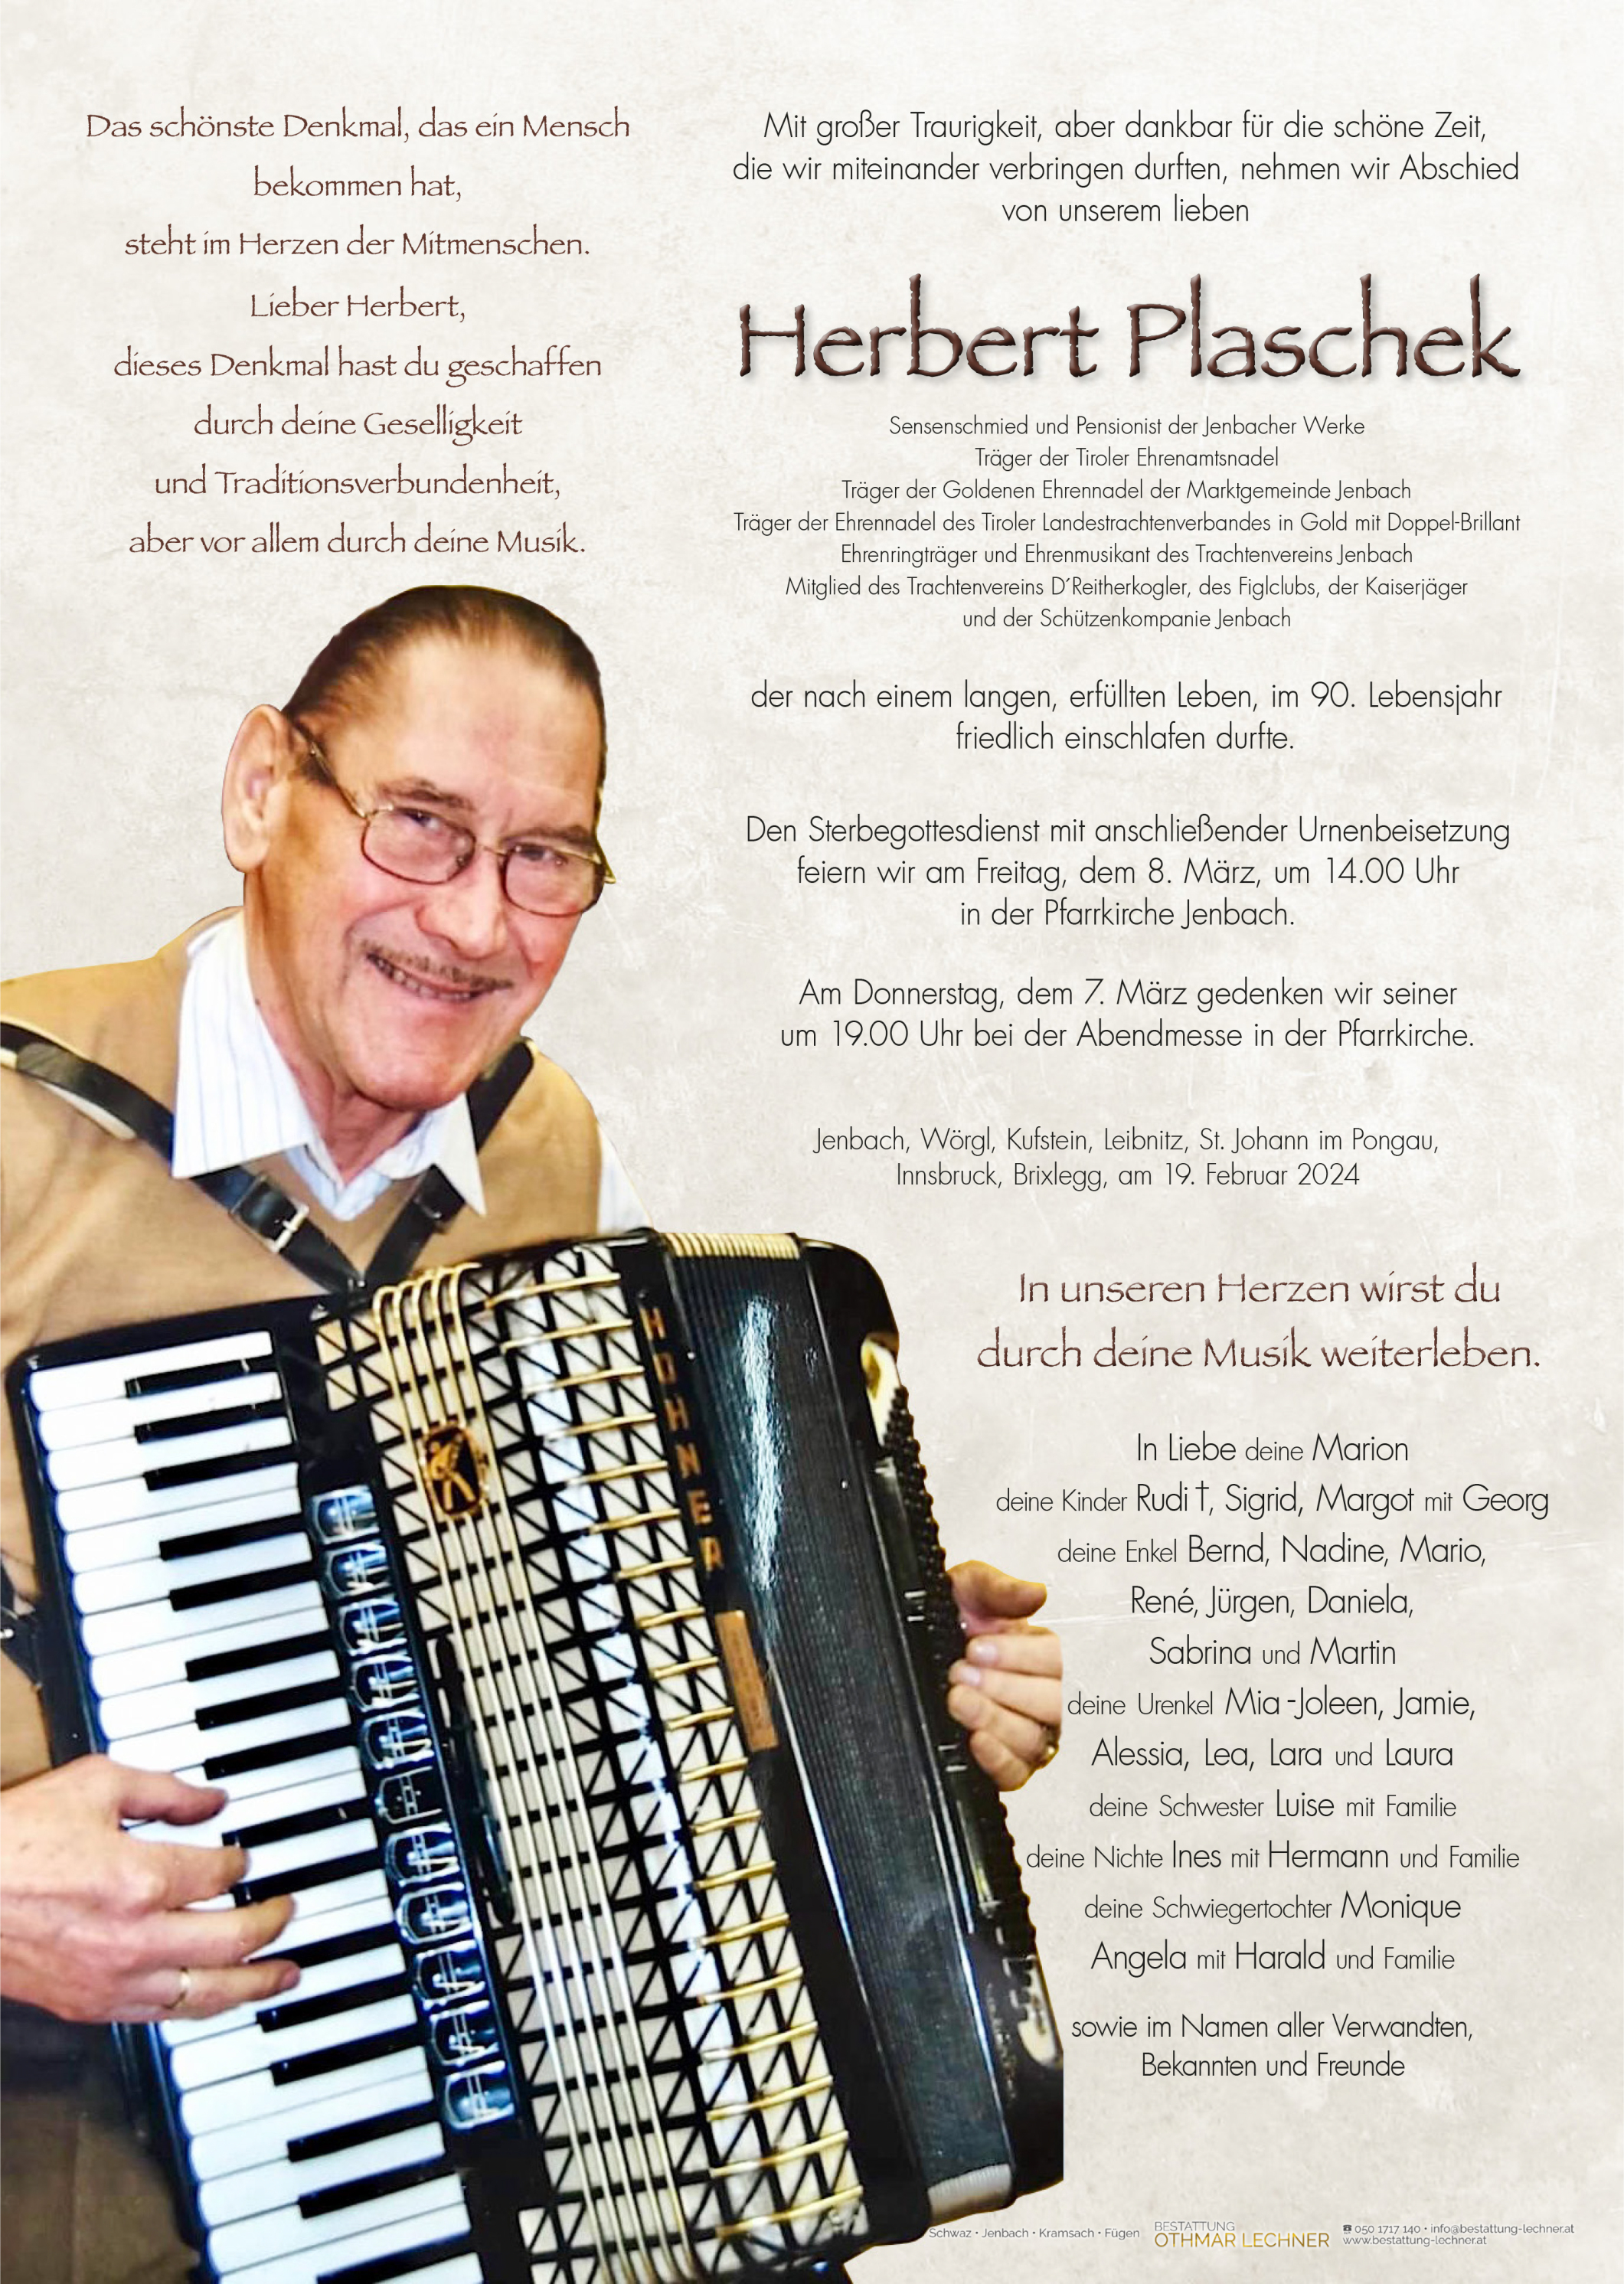 Herbert Plaschek